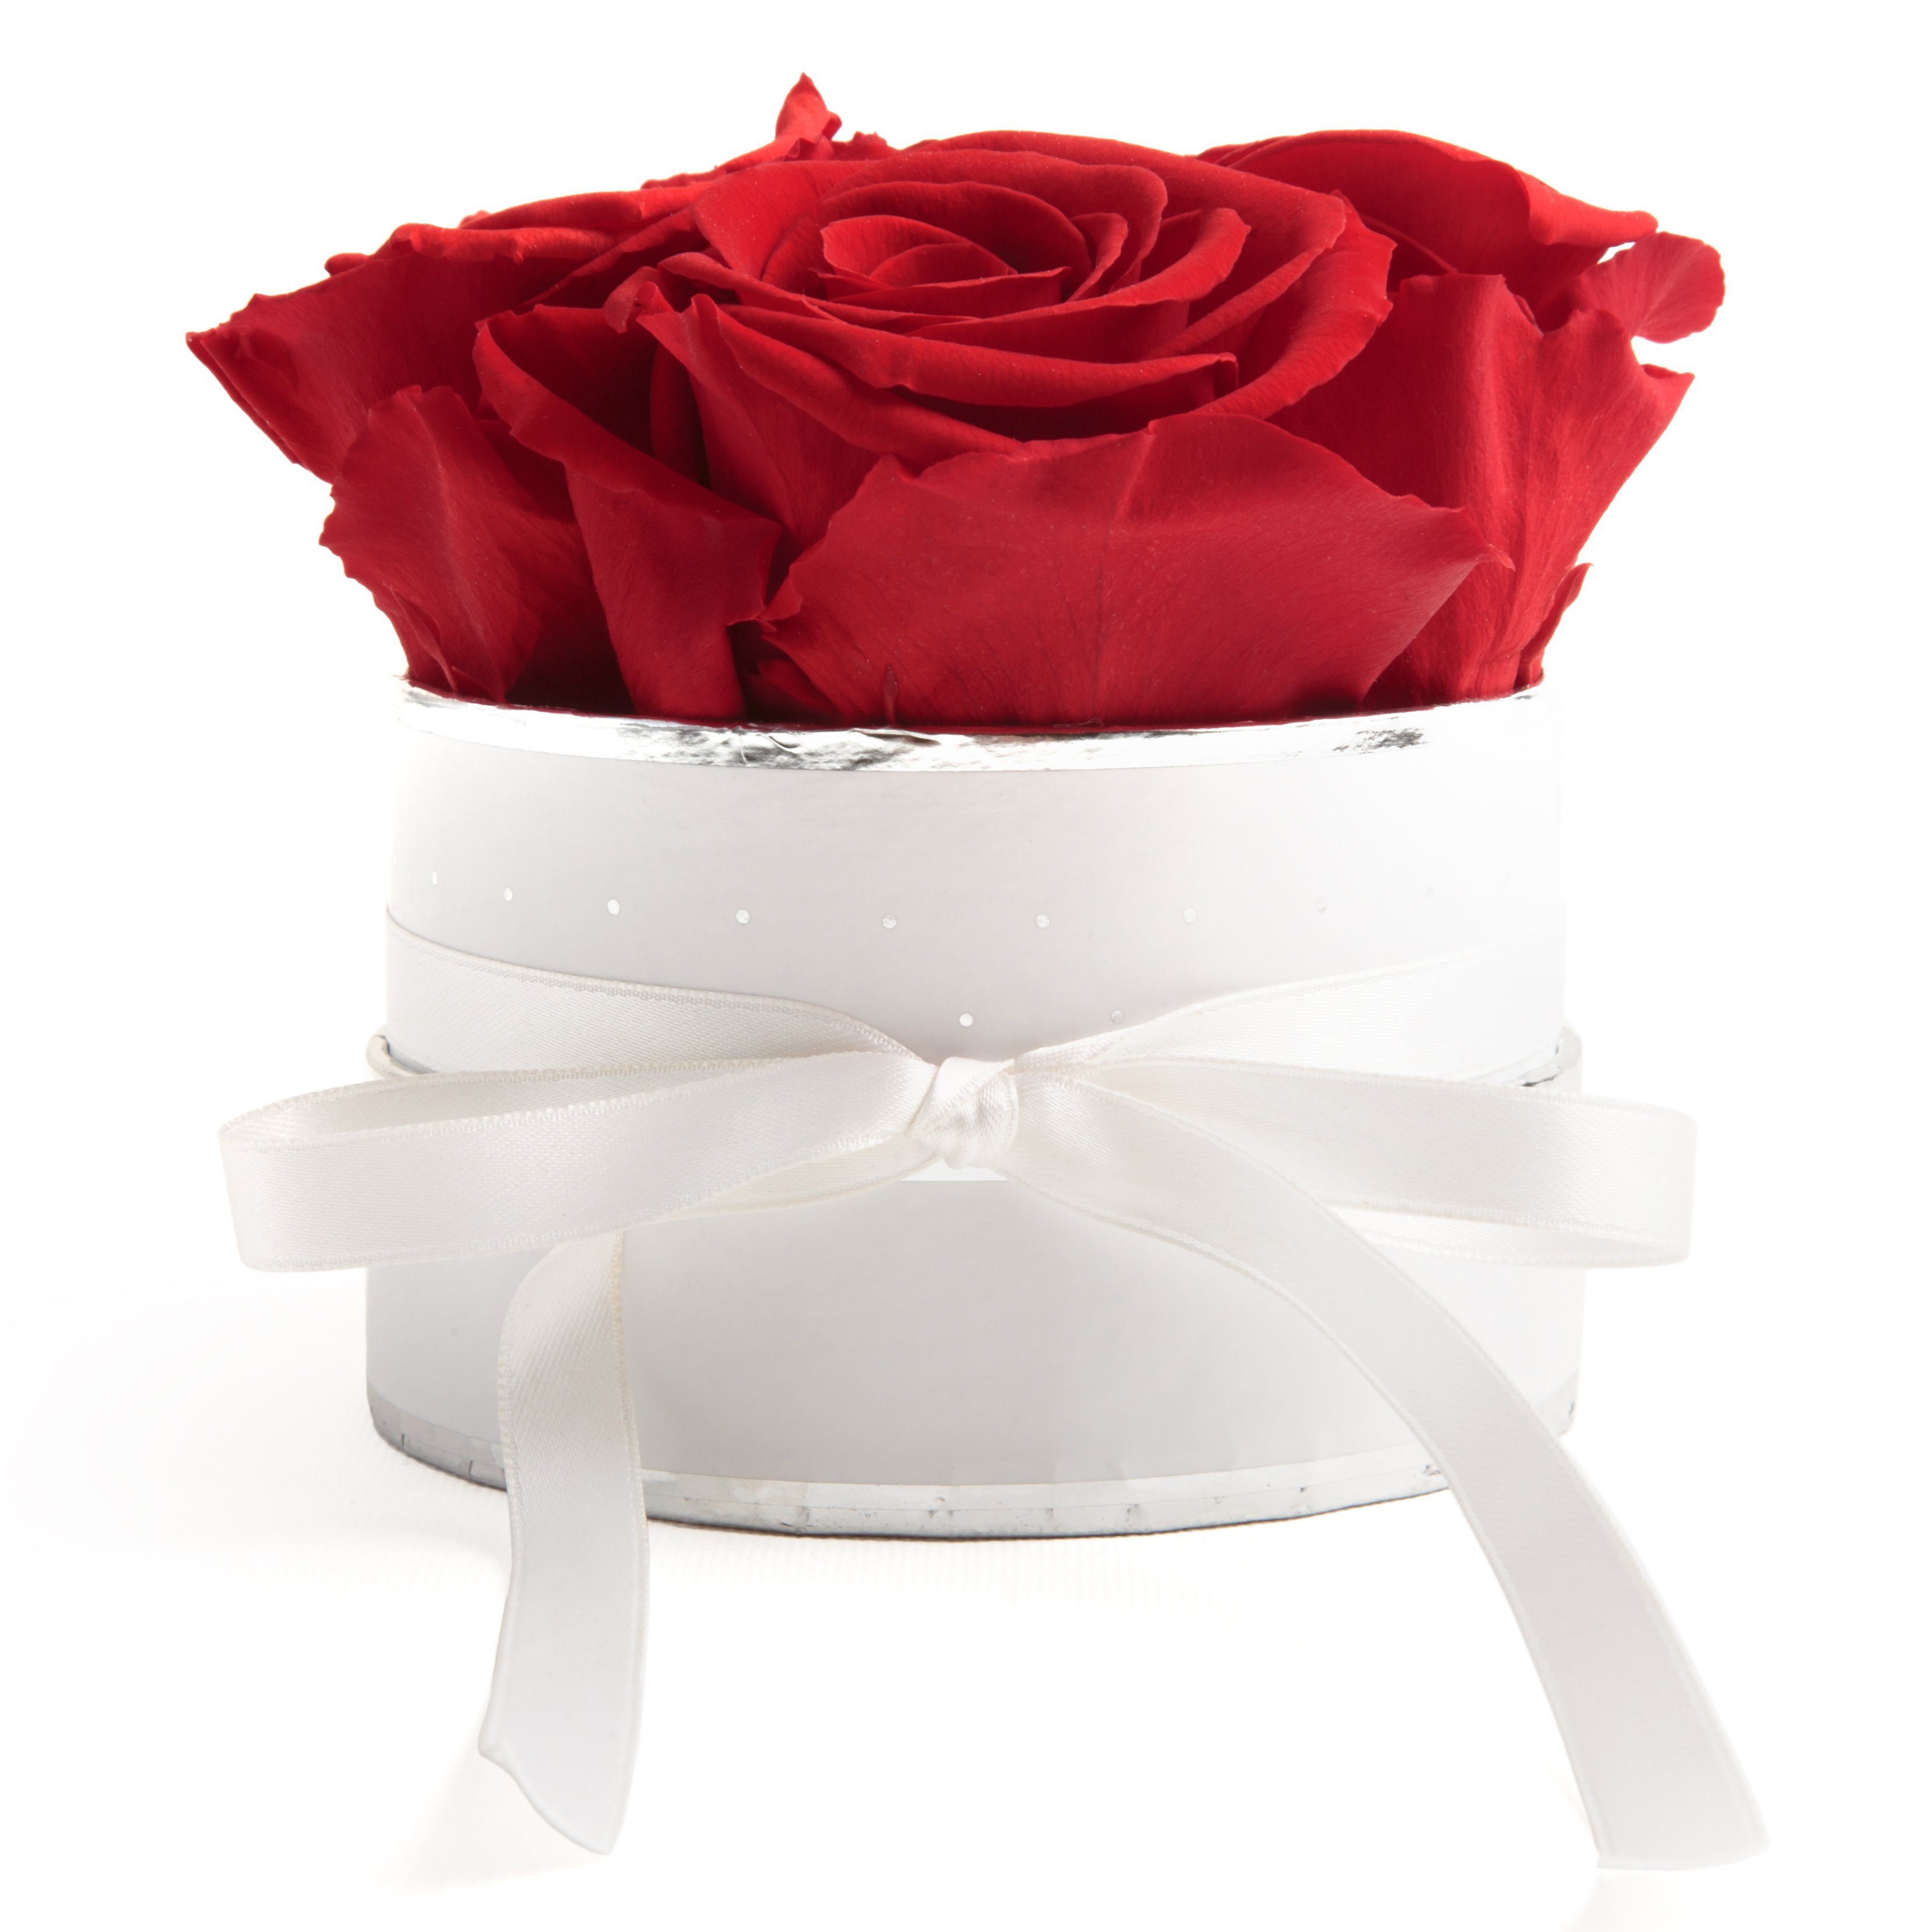 Kunstblume Infinity Rosenbox weiß rund 4 konservierte Rosen inklusiv Geschenkbox Rose, ROSEMARIE SCHULZ Heidelberg, Höhe 10 cm, echte Rosen haltbar 3 Jahre Rot